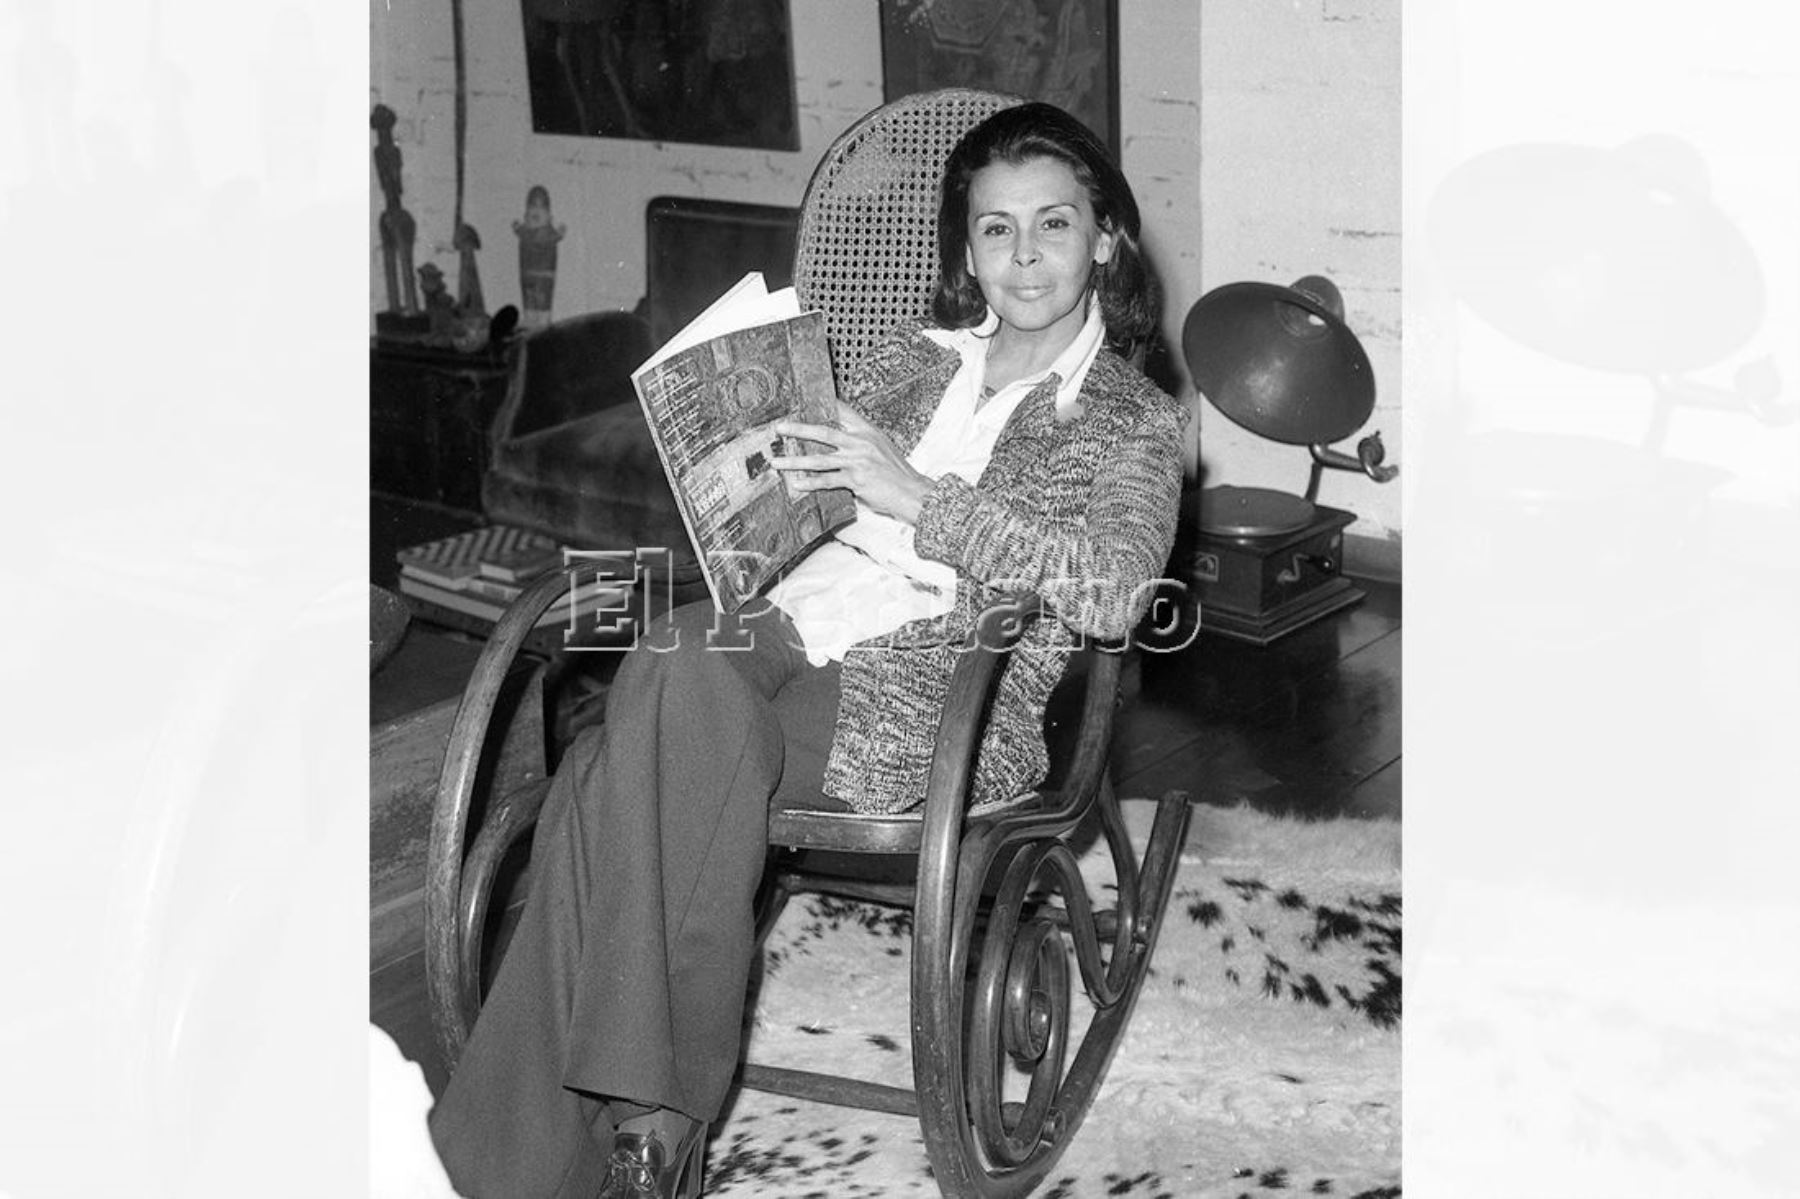 Lima - 5 julio 1975. Entrevista a la poeta Blanca Varela para Mundial de "La Crónica".